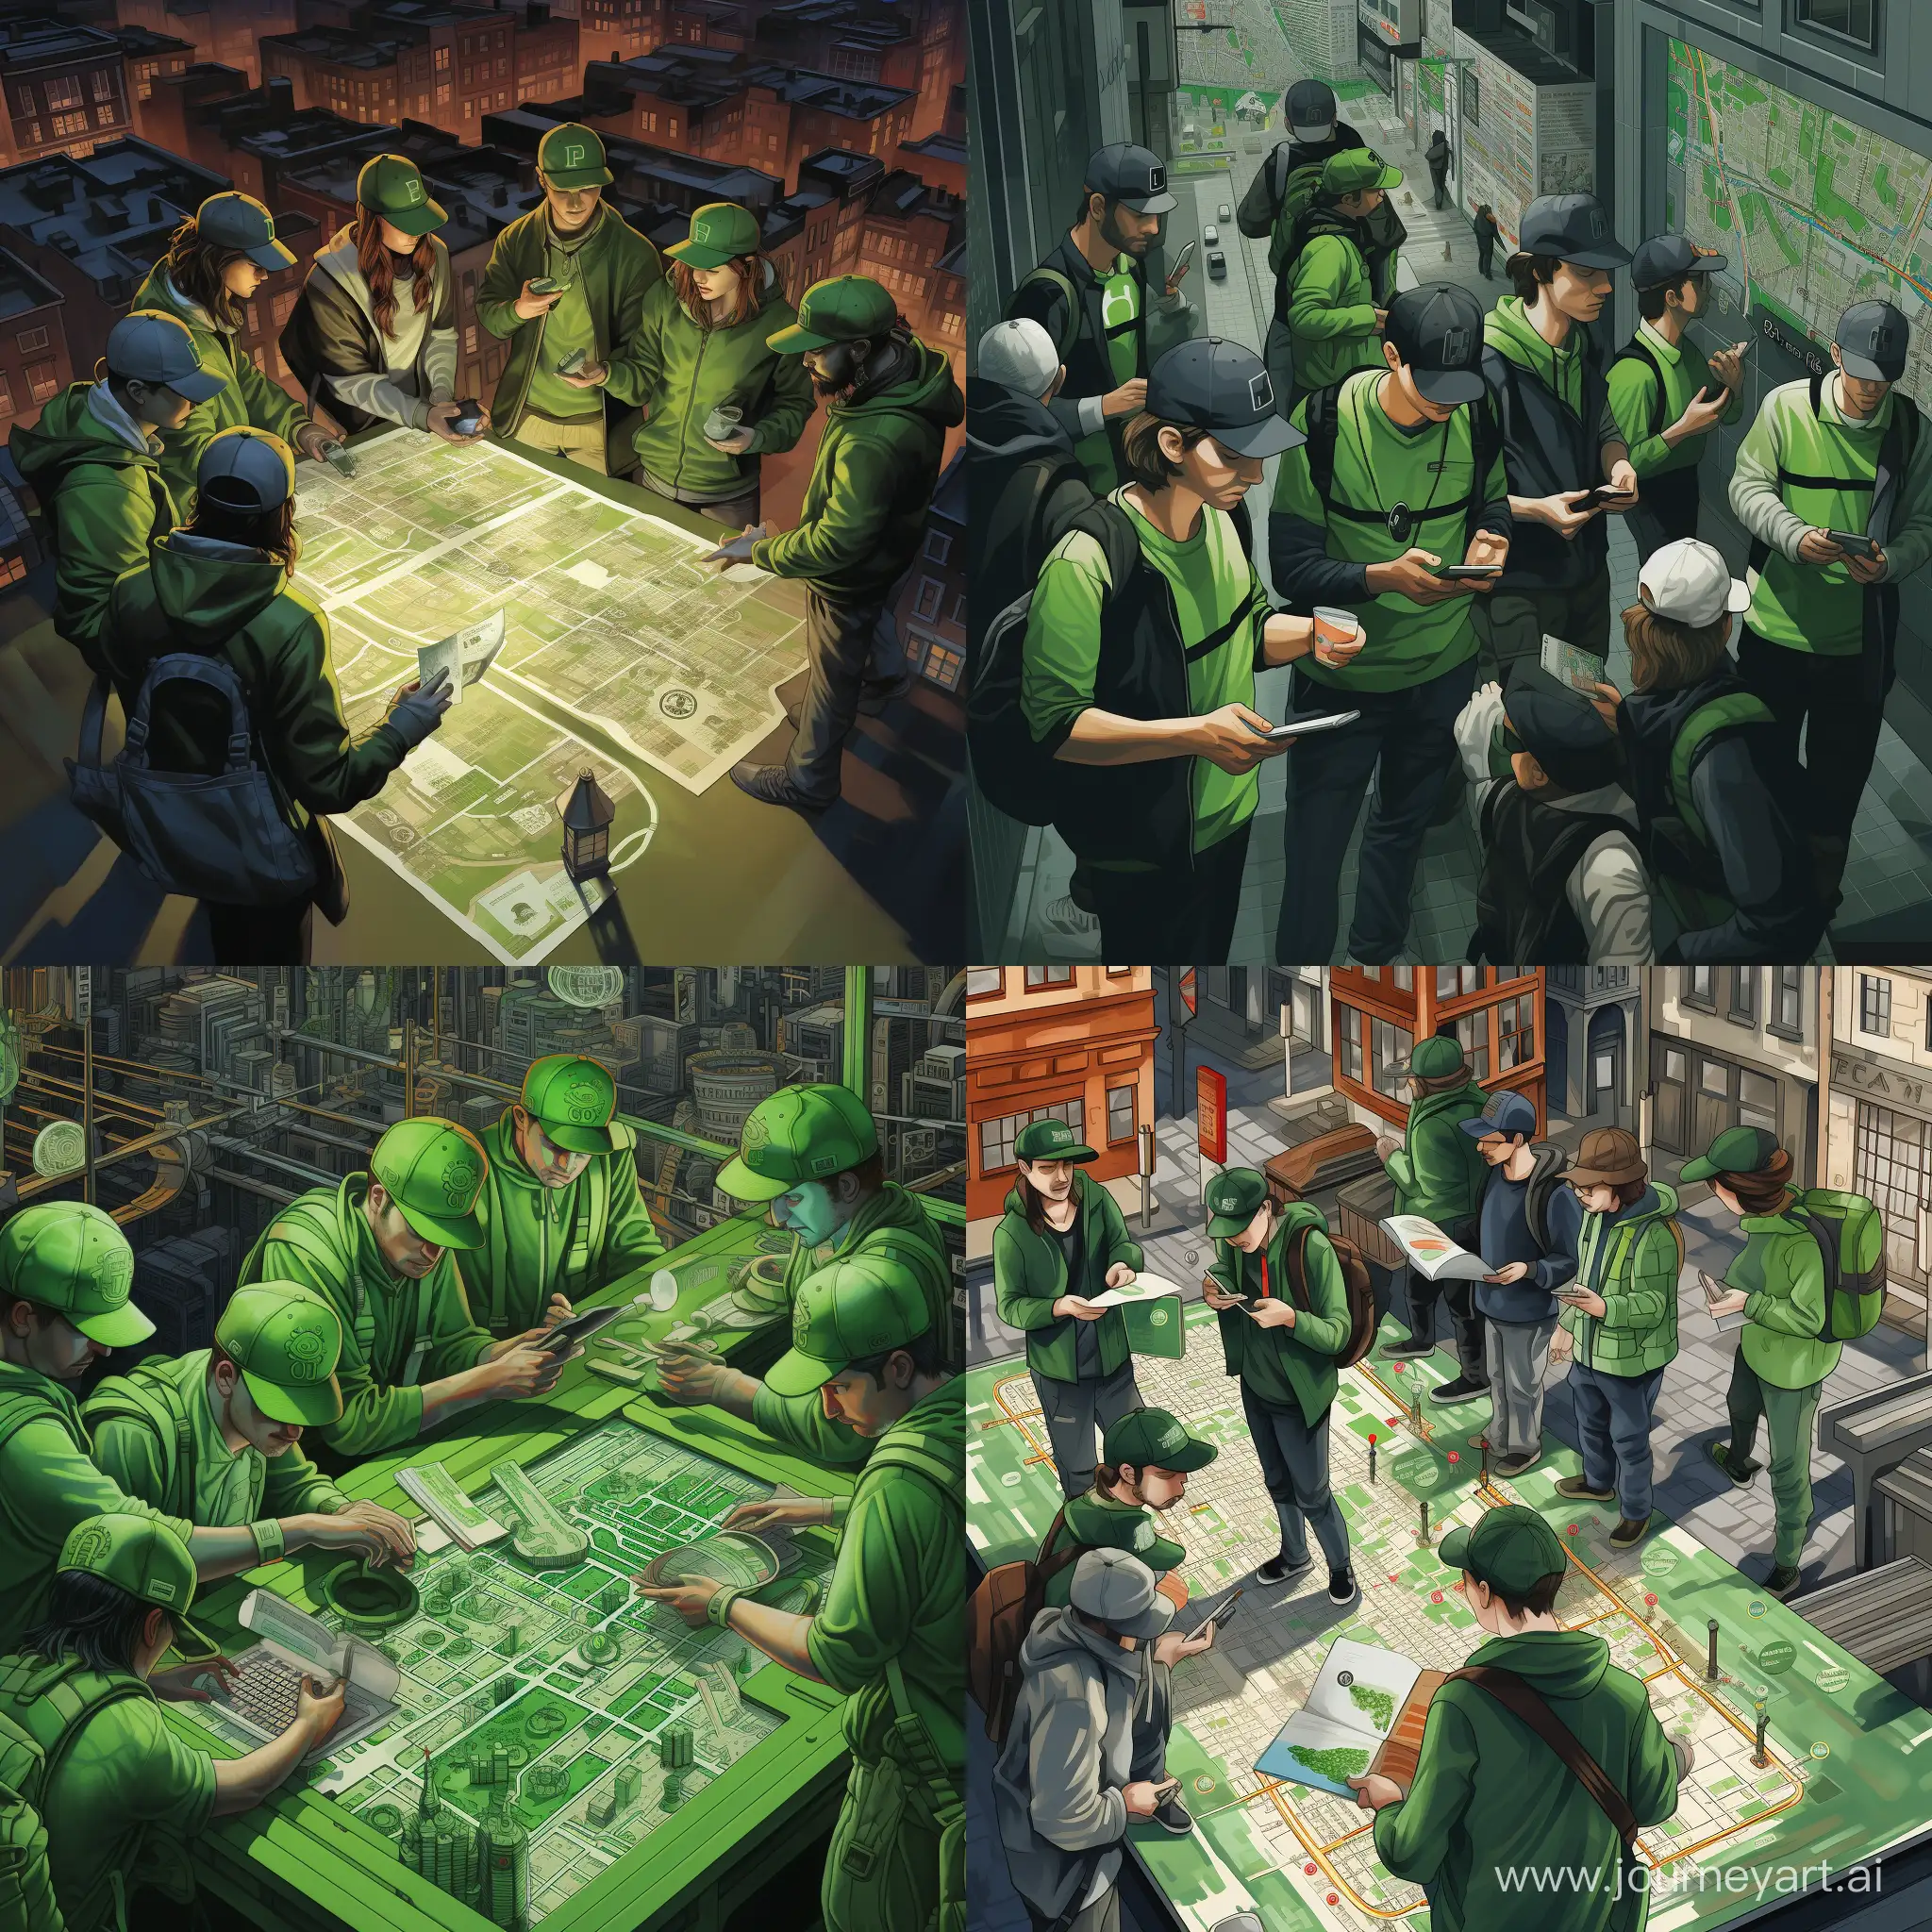 Изображена карта города. В каждой зоне изображены мужчины в зеленых бейсболках с планшетами в руках, в зеленой форме. От каждого мужчины нарисована жирная линия маршрут к разным зданиям.